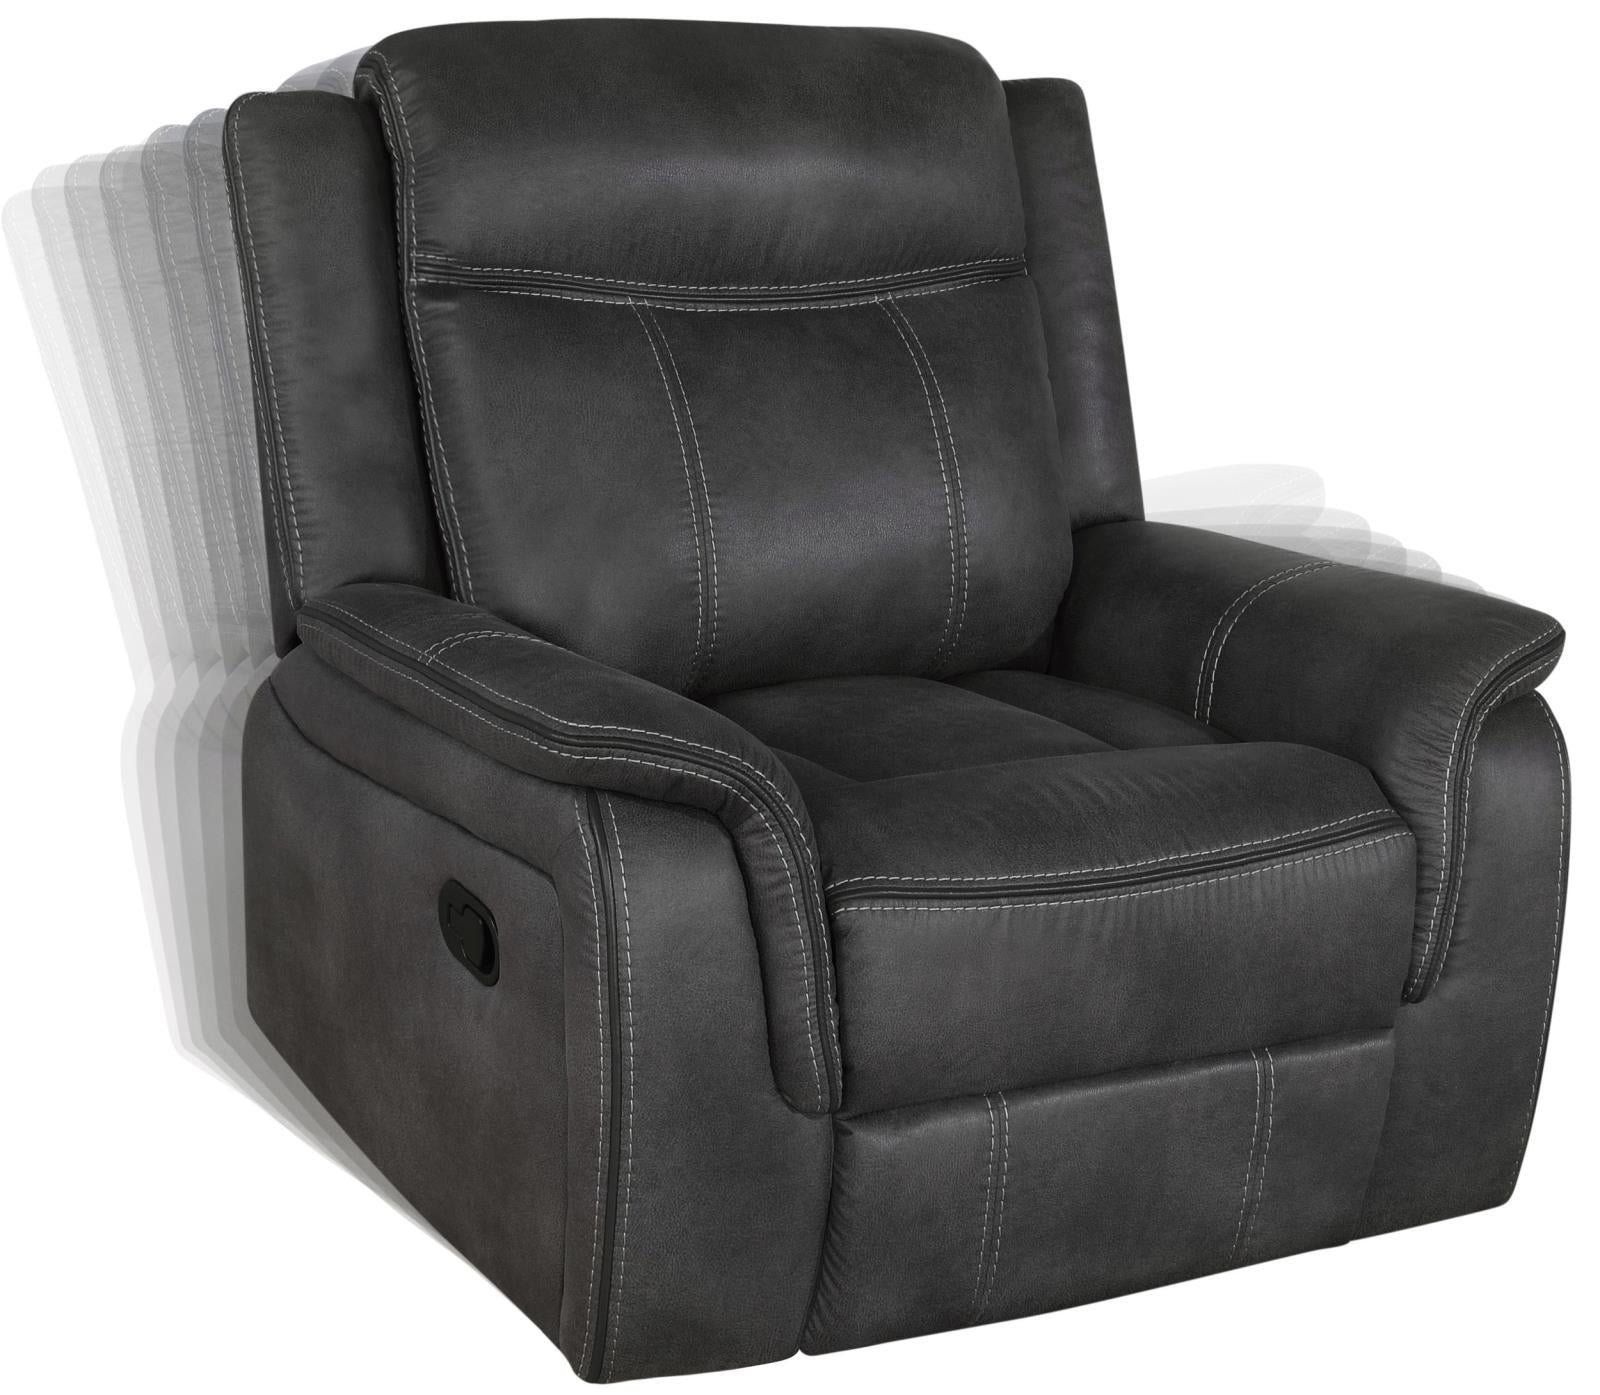 Lawrence Upholstered Tufted Back Glider Recliner - Half Price Furniture